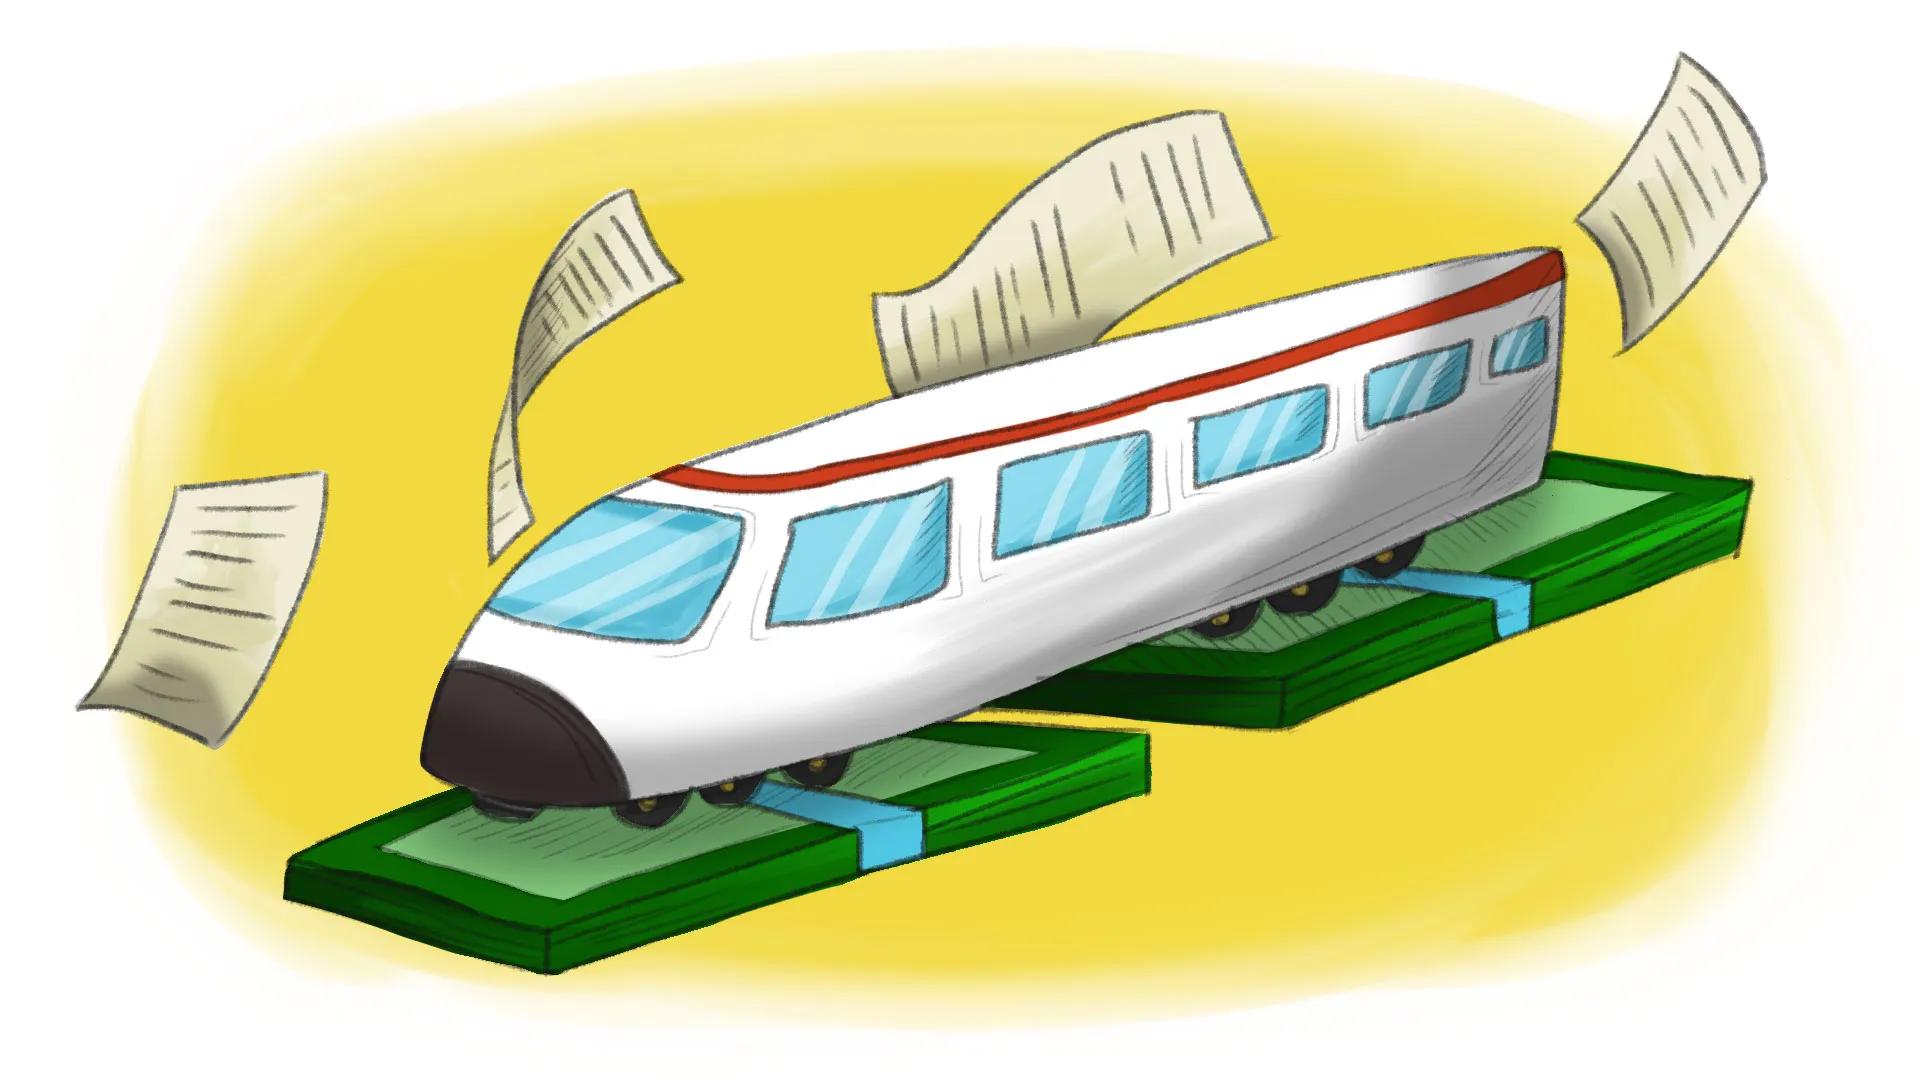 tren maya dibujo - Cuál es el modelo del Tren Maya